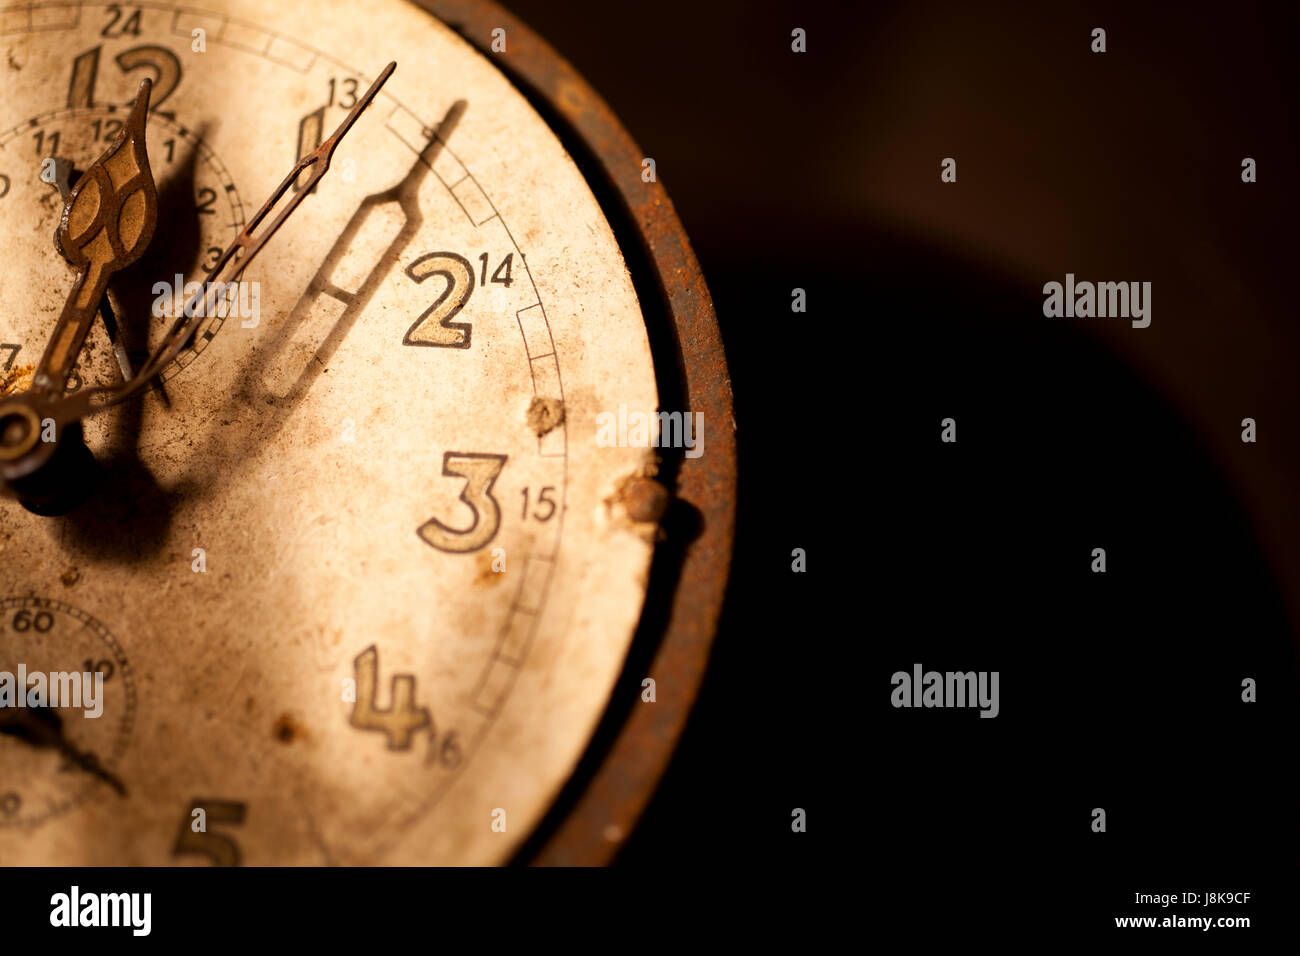 Réveil, pointeur, temps, autrefois, par contre, les valeurs numériques de l'horloge, réveil, date limite, Banque D'Images